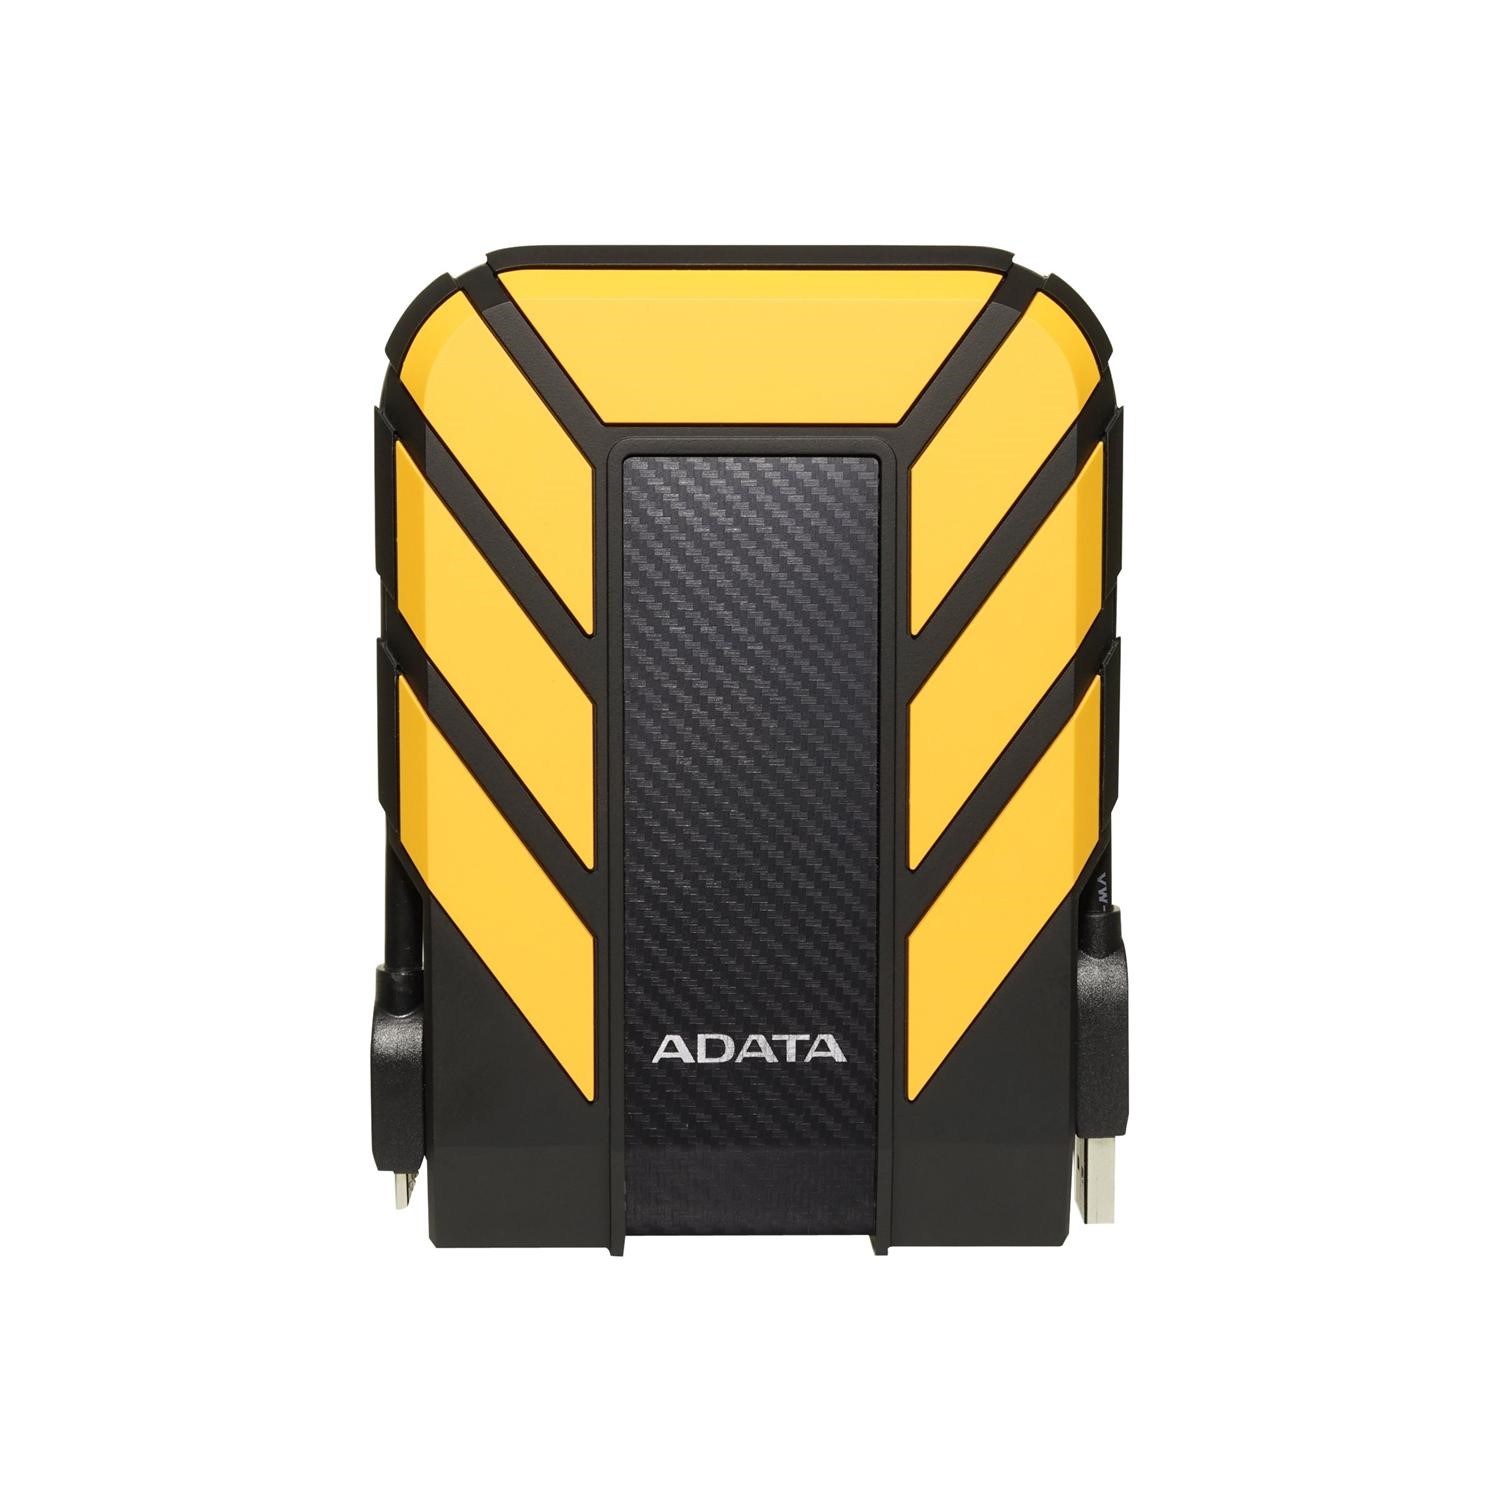 Adata HD710P 1TB 2.5 USB 3.0 External Hard Drive